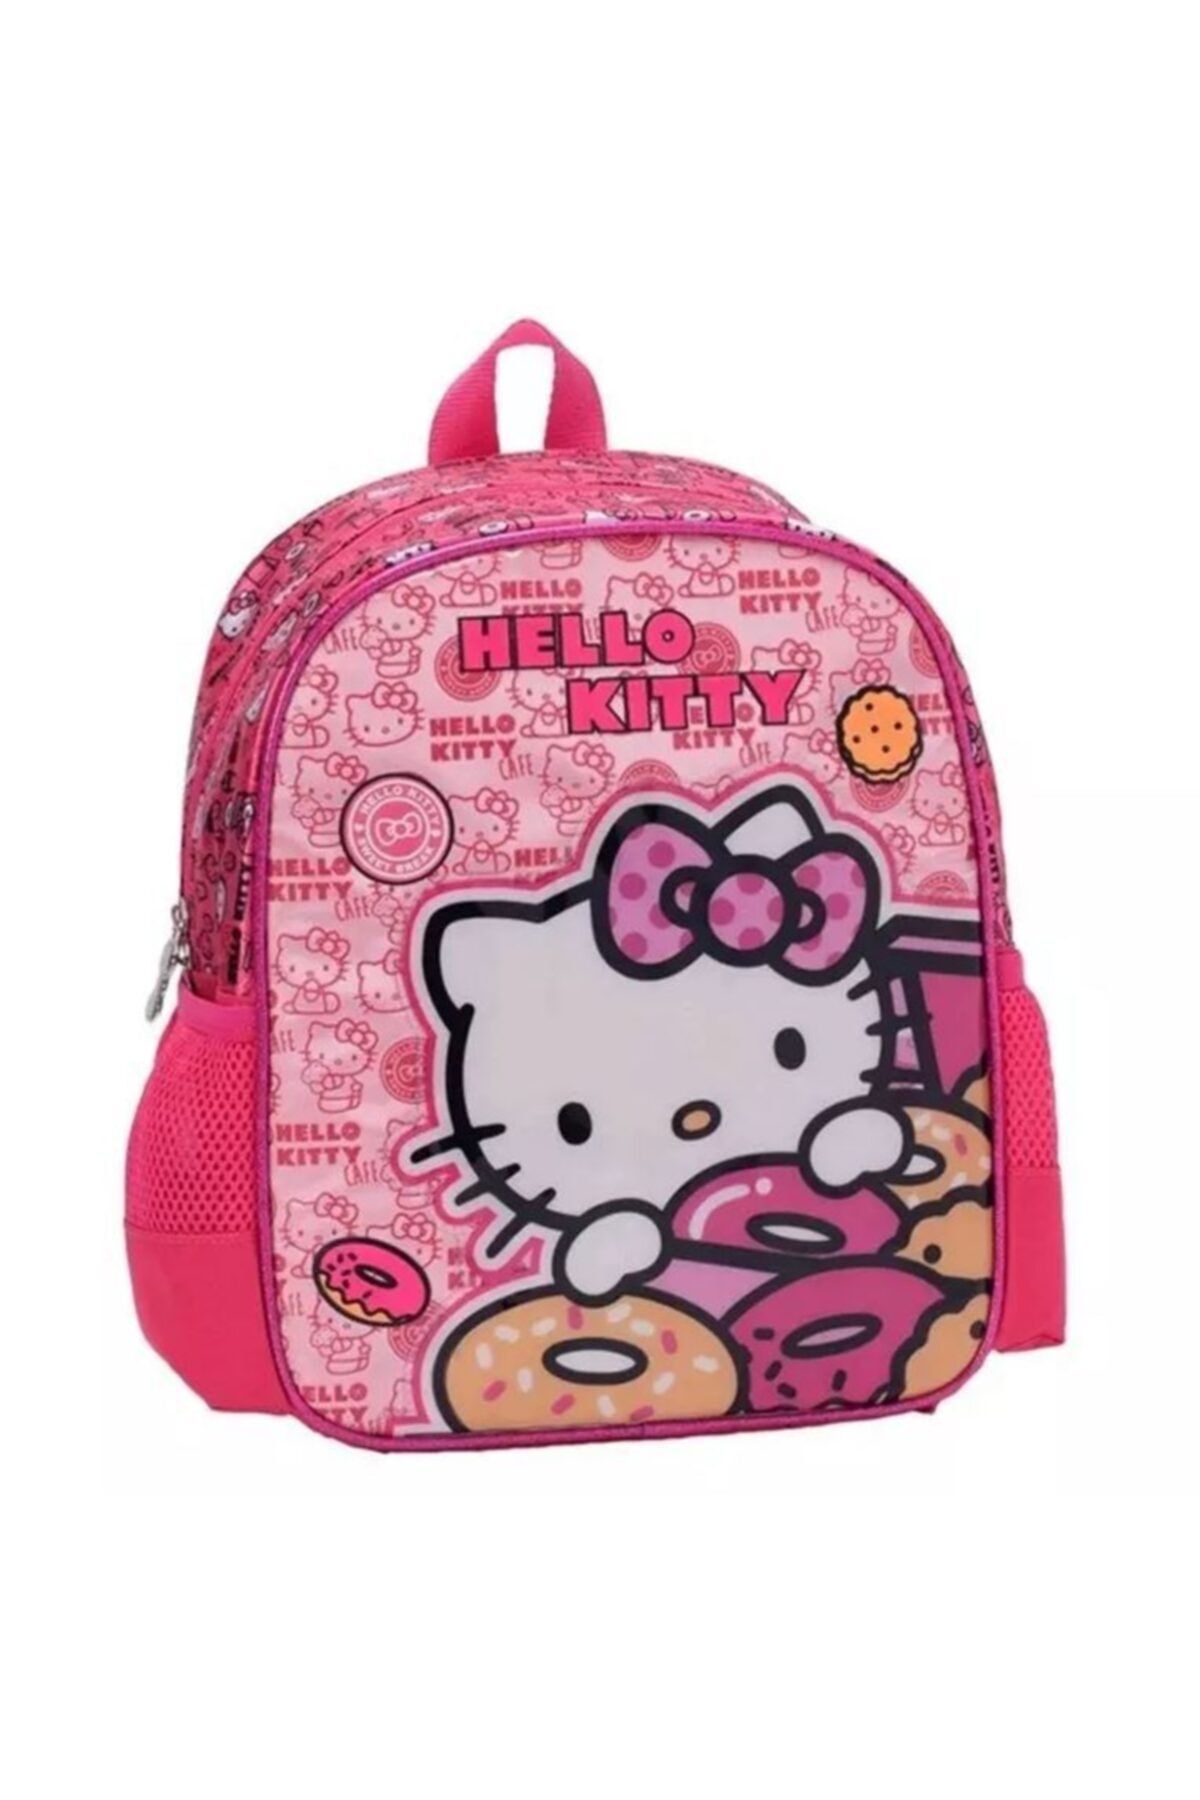 Hakan Çanta Hello Kitty Anaokul Sırt Çantası Hkn 87534